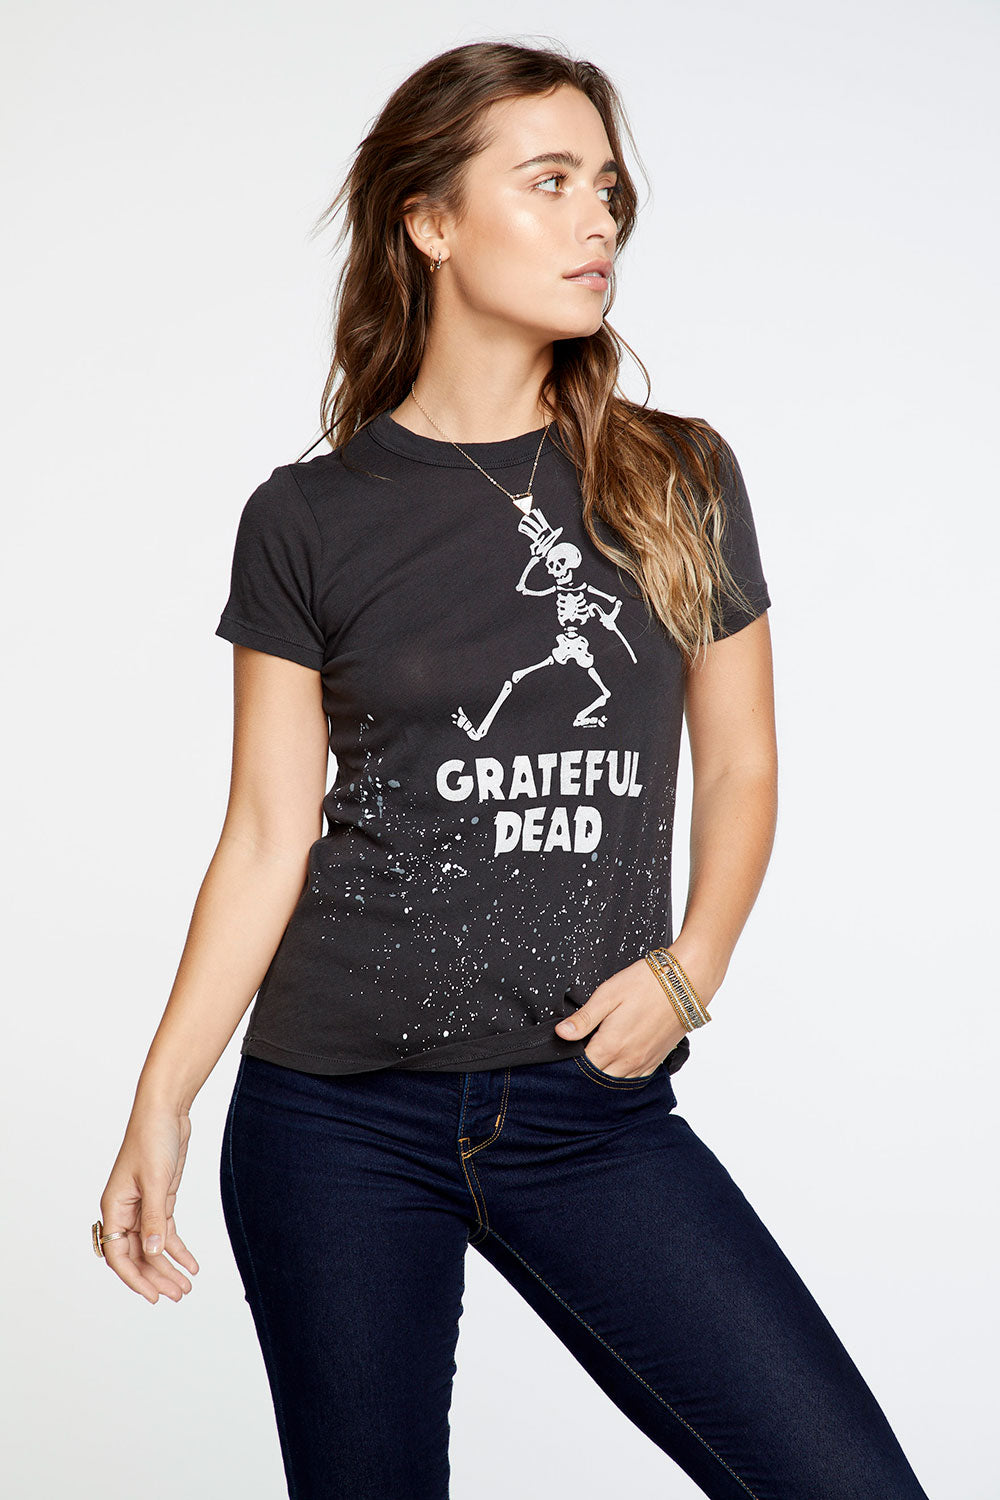 grateful dead women's shirt